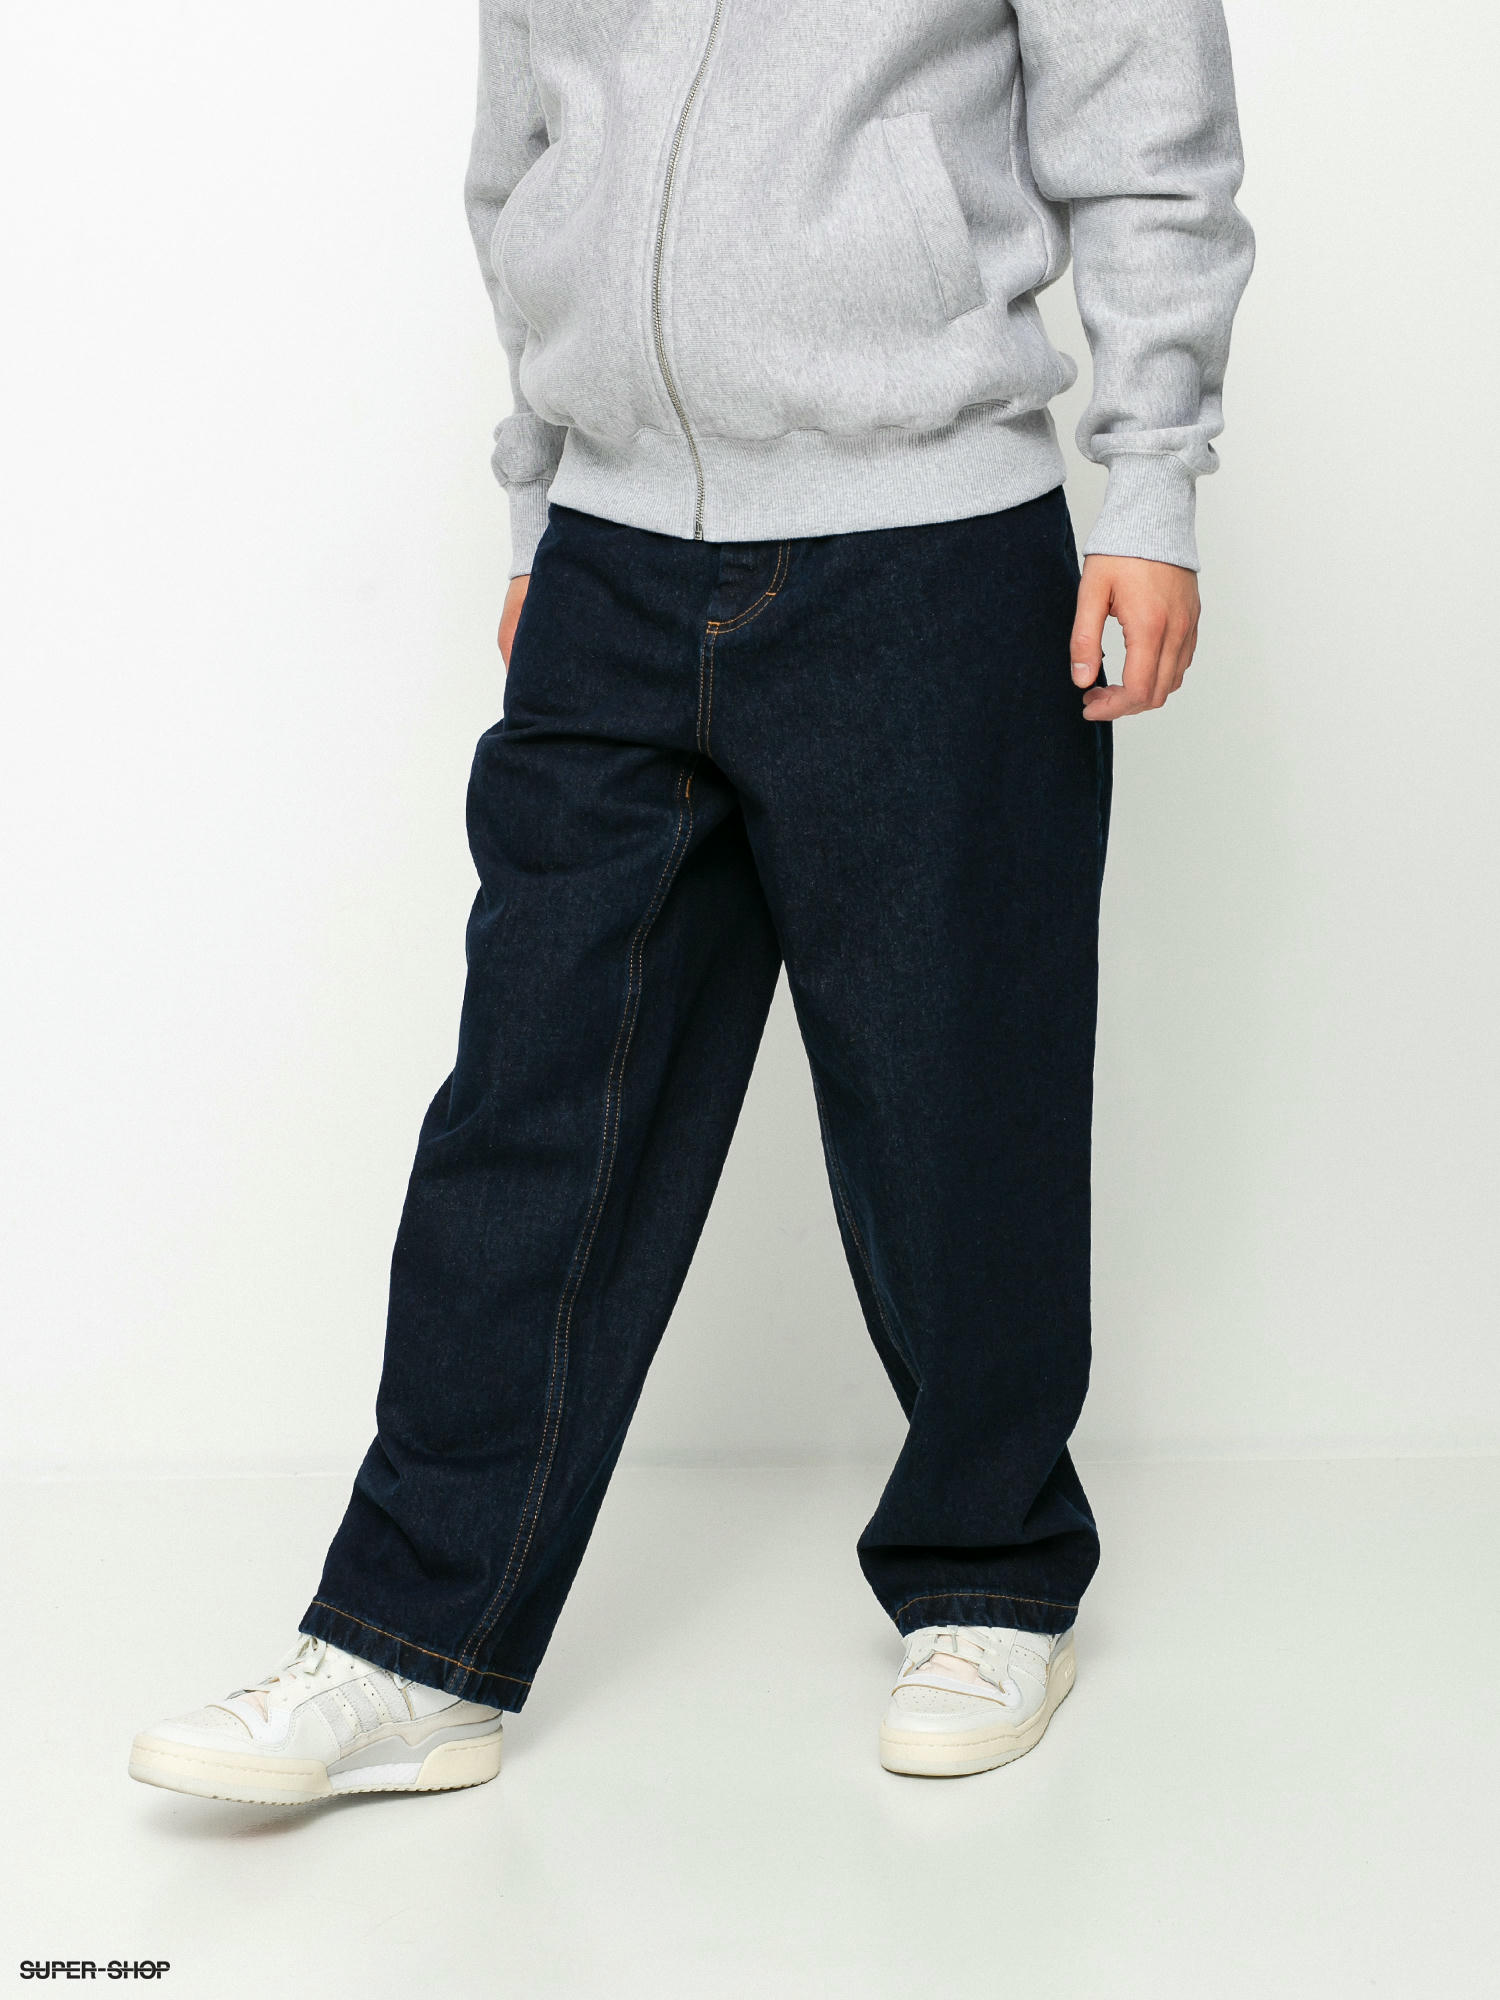 Polar Skate Big Boy Jeans Pants (deep blue)